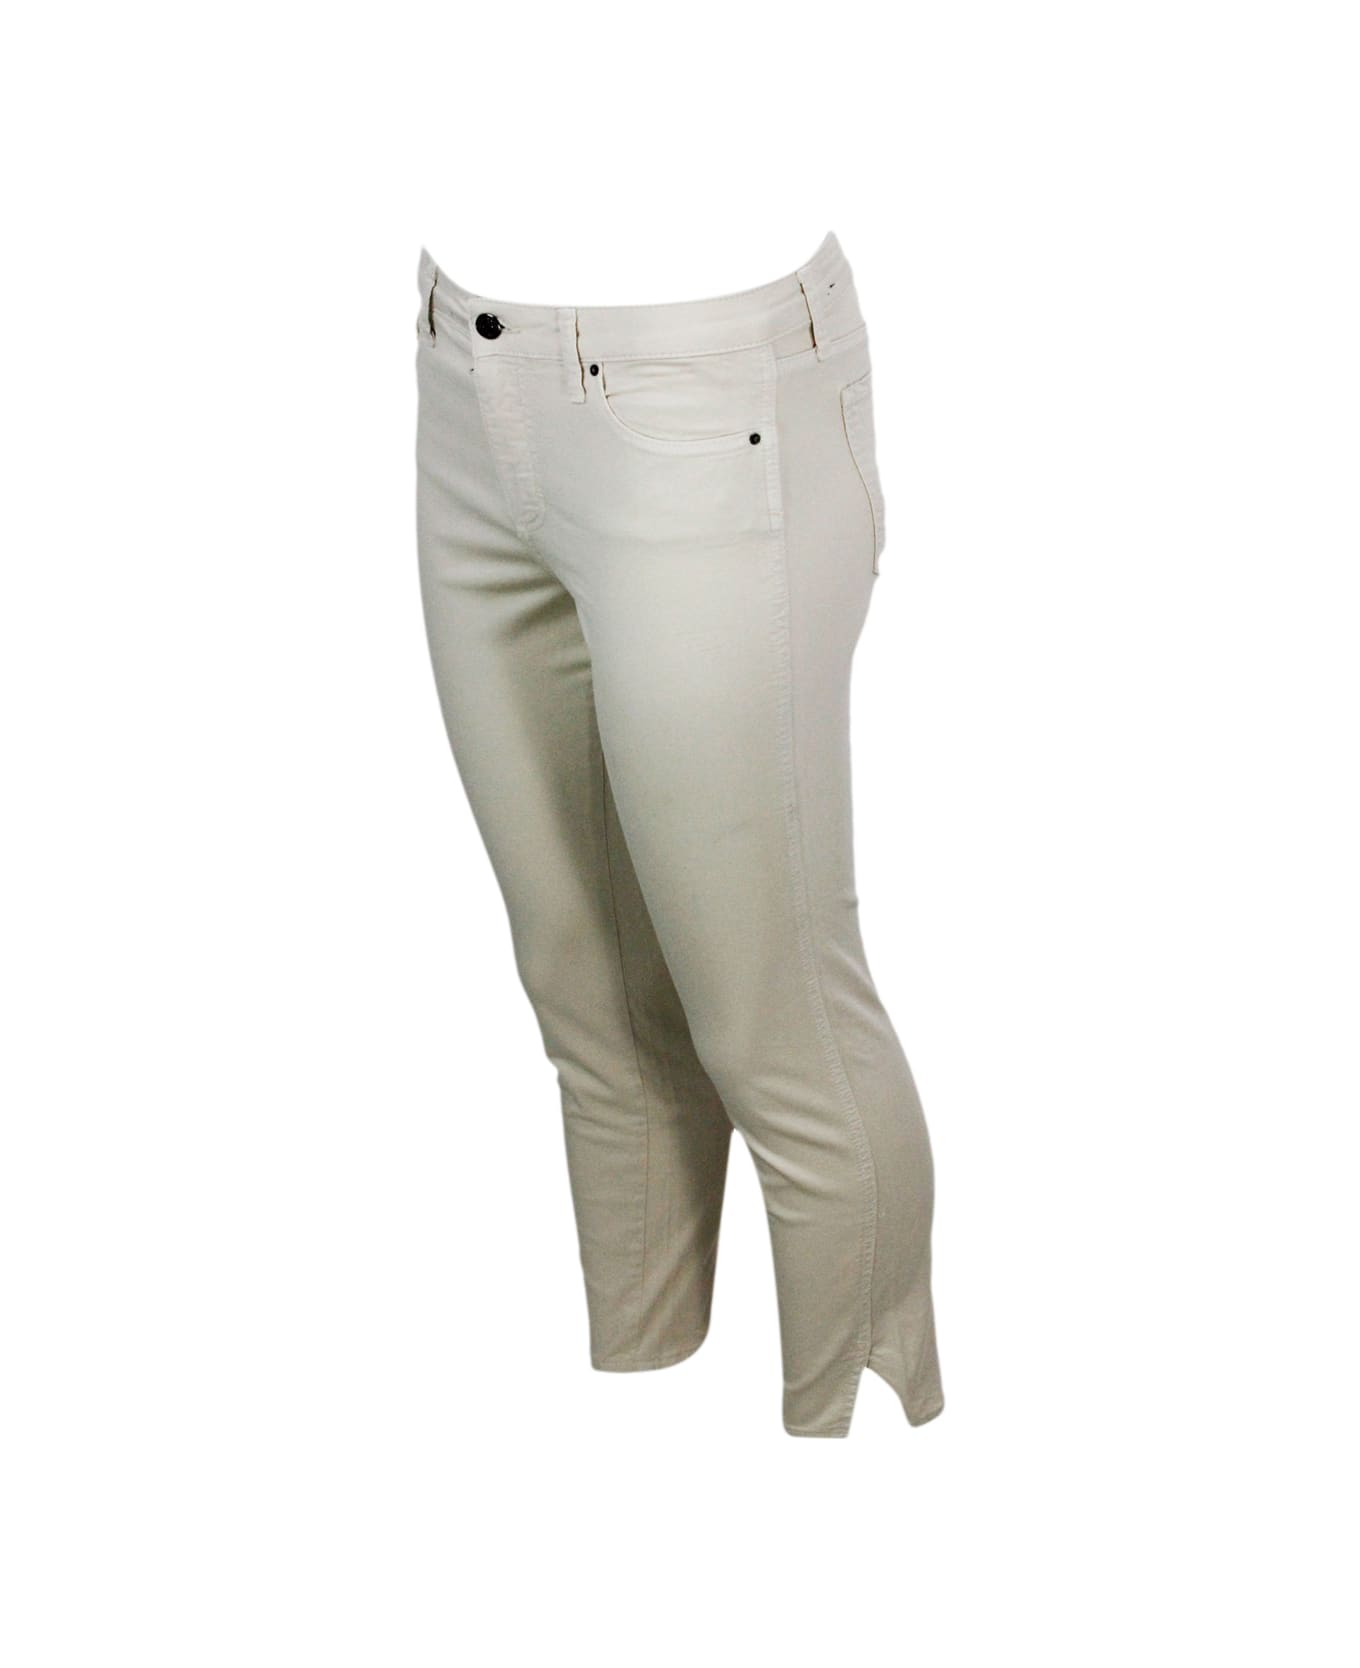 Armani Collezioni 5-pocket Trousers In Soft Stretch Cotton Super Skinny Capri. Zip And Button Closure. - Beige ボトムス